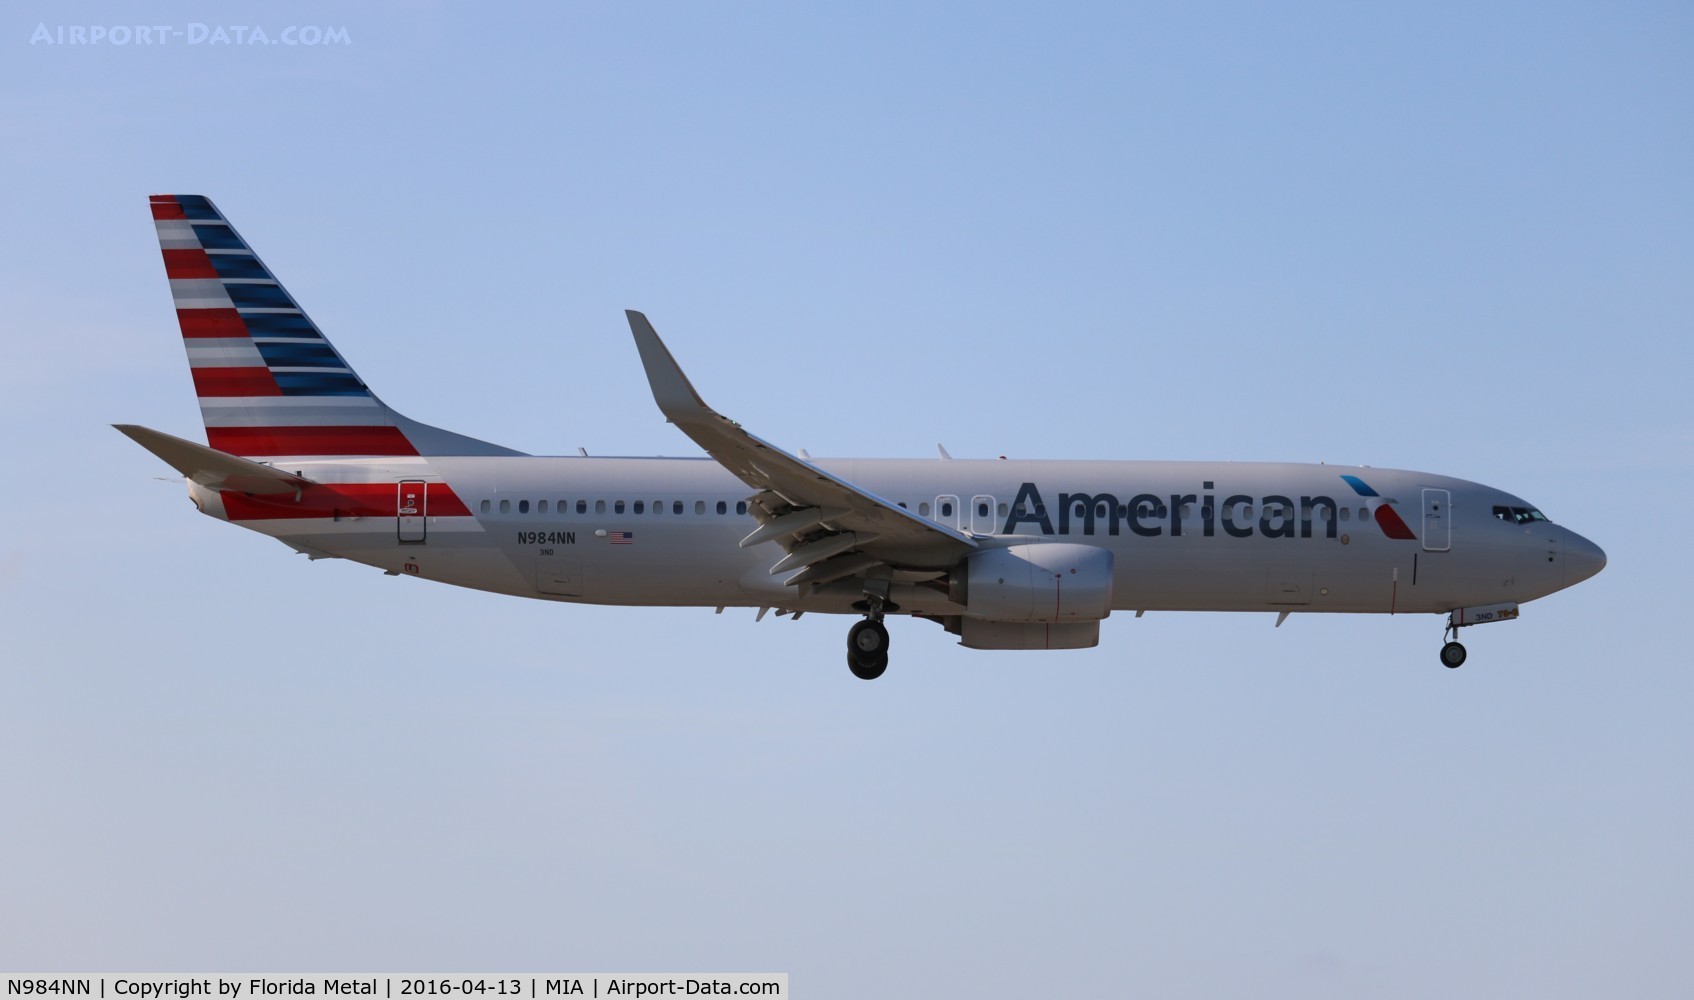 N984NN, 2015 Boeing 737-823 C/N 31234, American